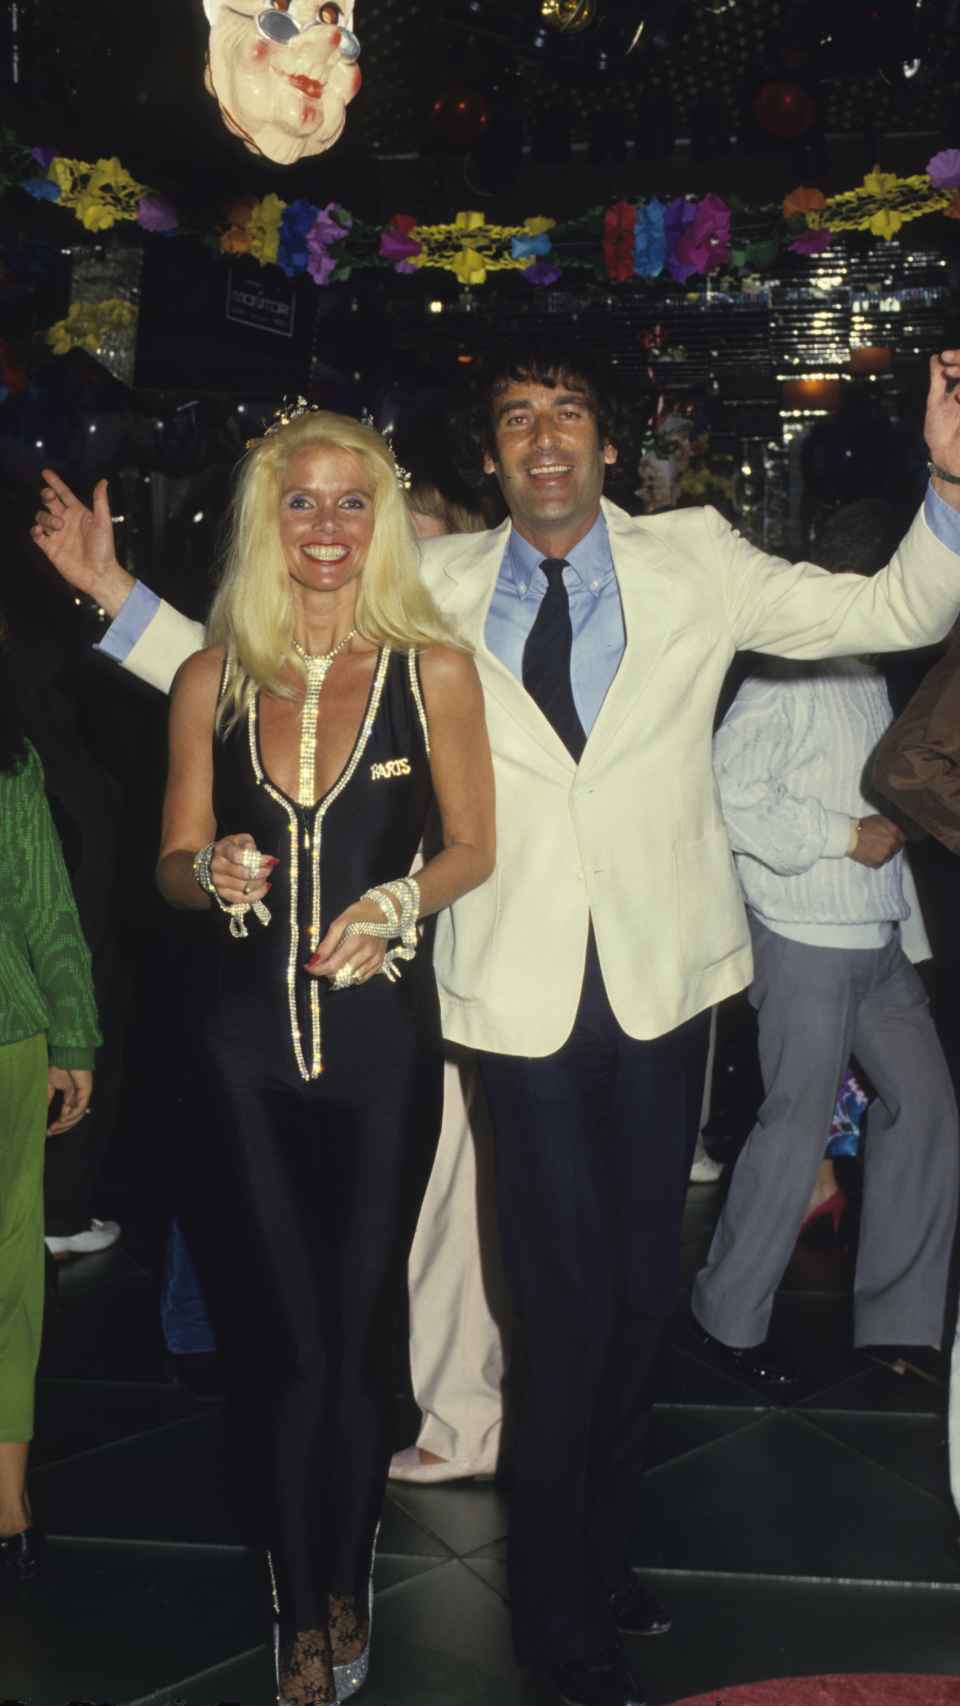 Luis Ortiz y Gunilla von Bismarck en una foto en la década de los 80 en Marbella.